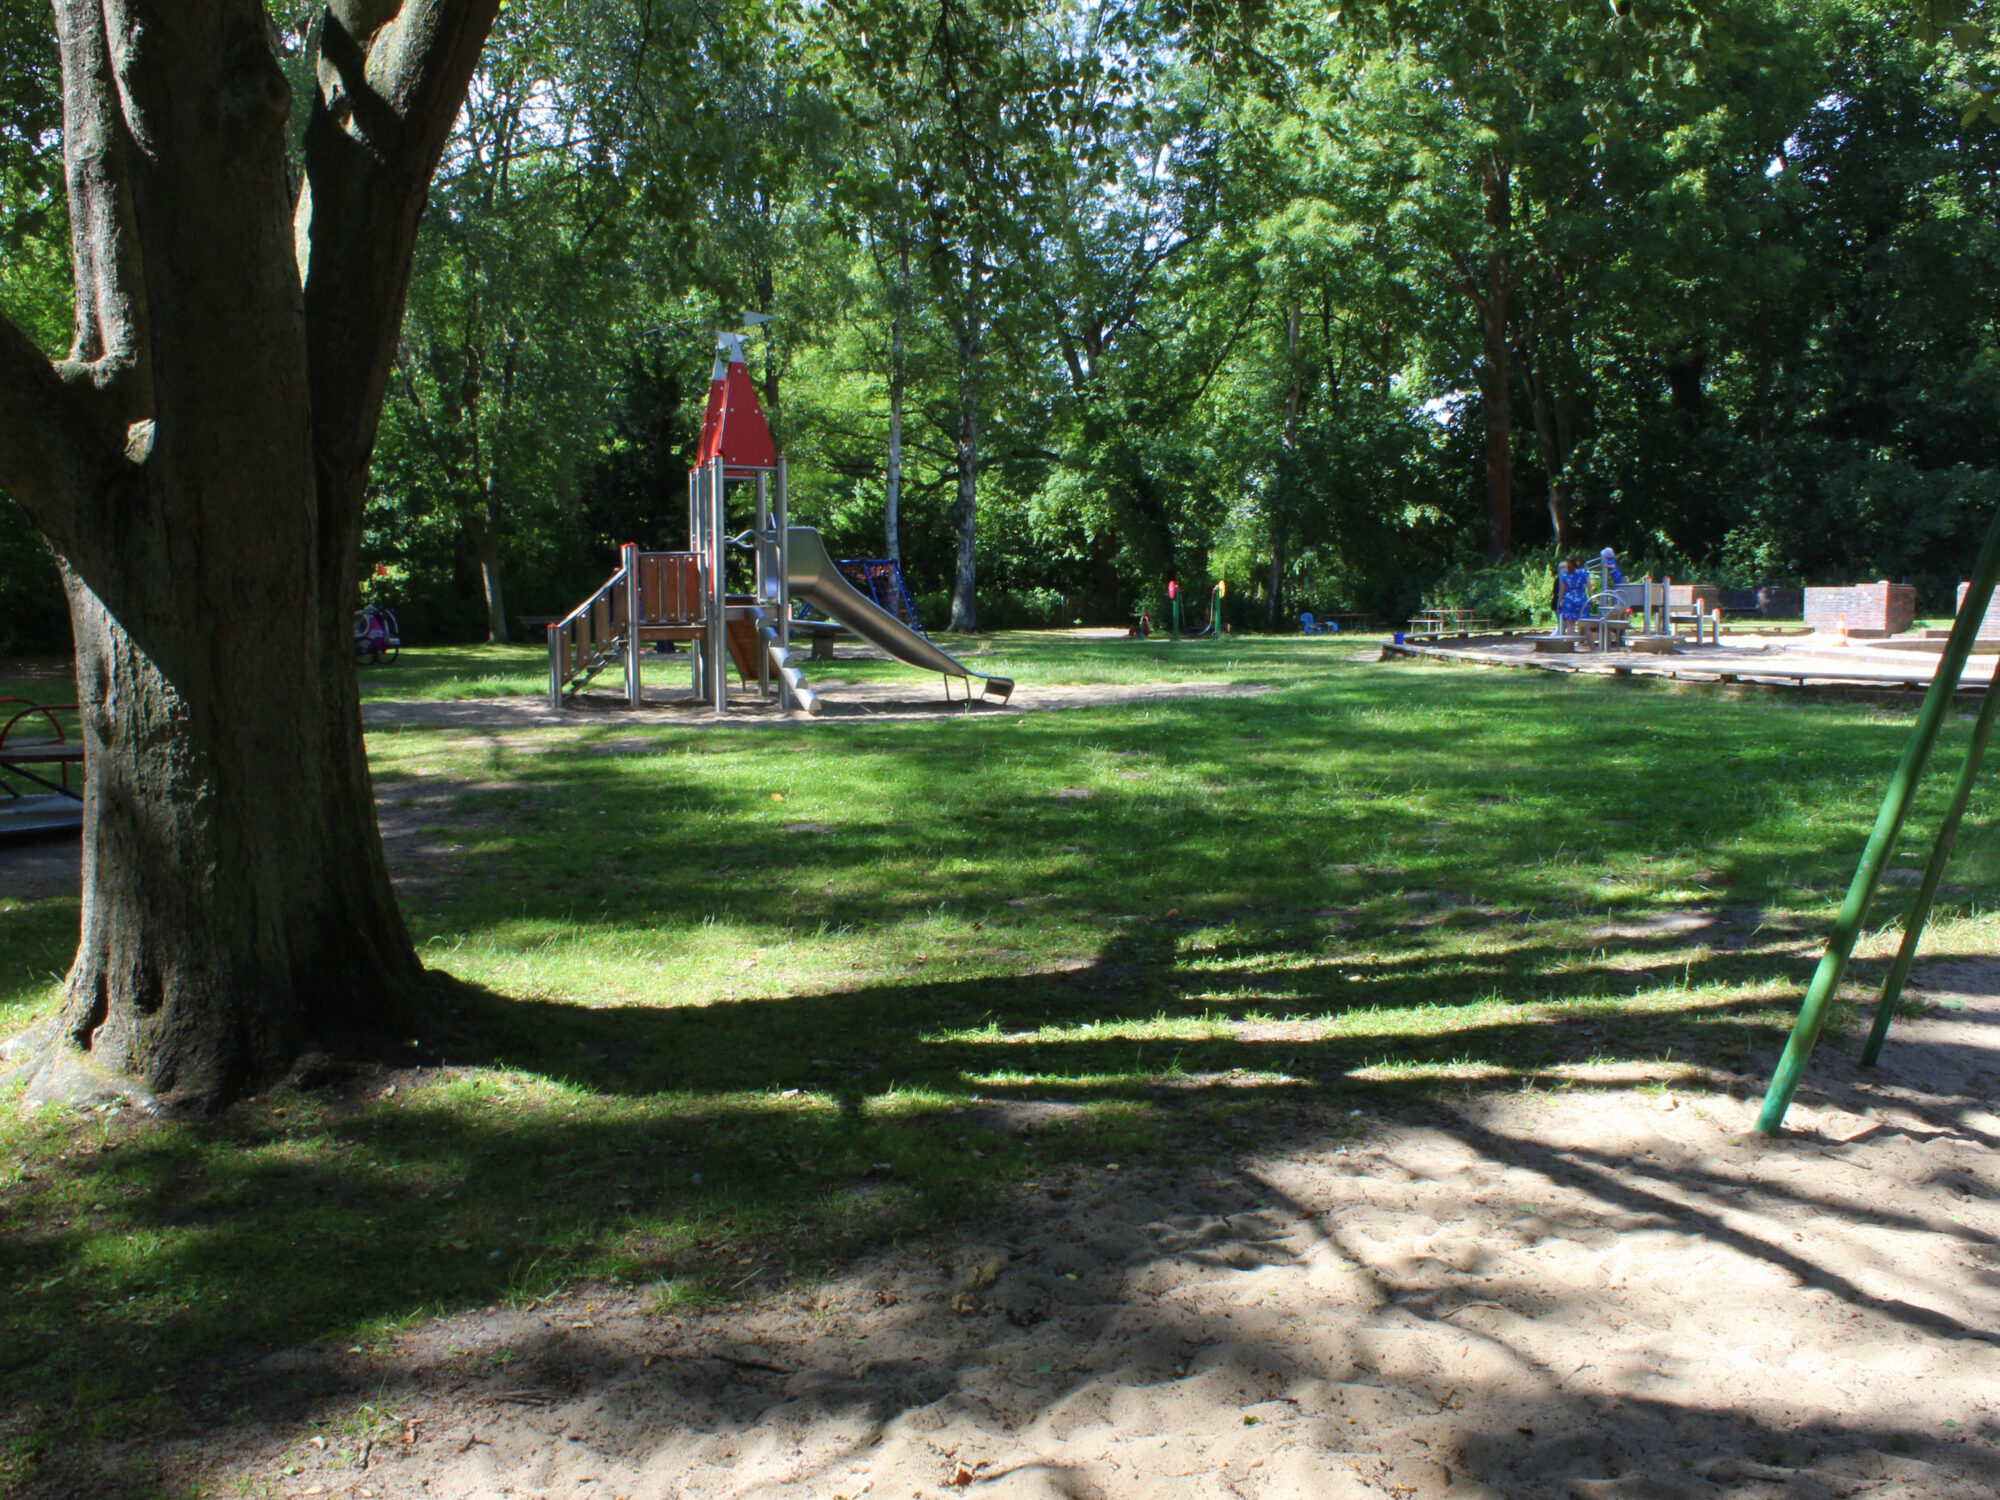 Picknick und Picknicken in Lübeck im Kaisertorspielplatz